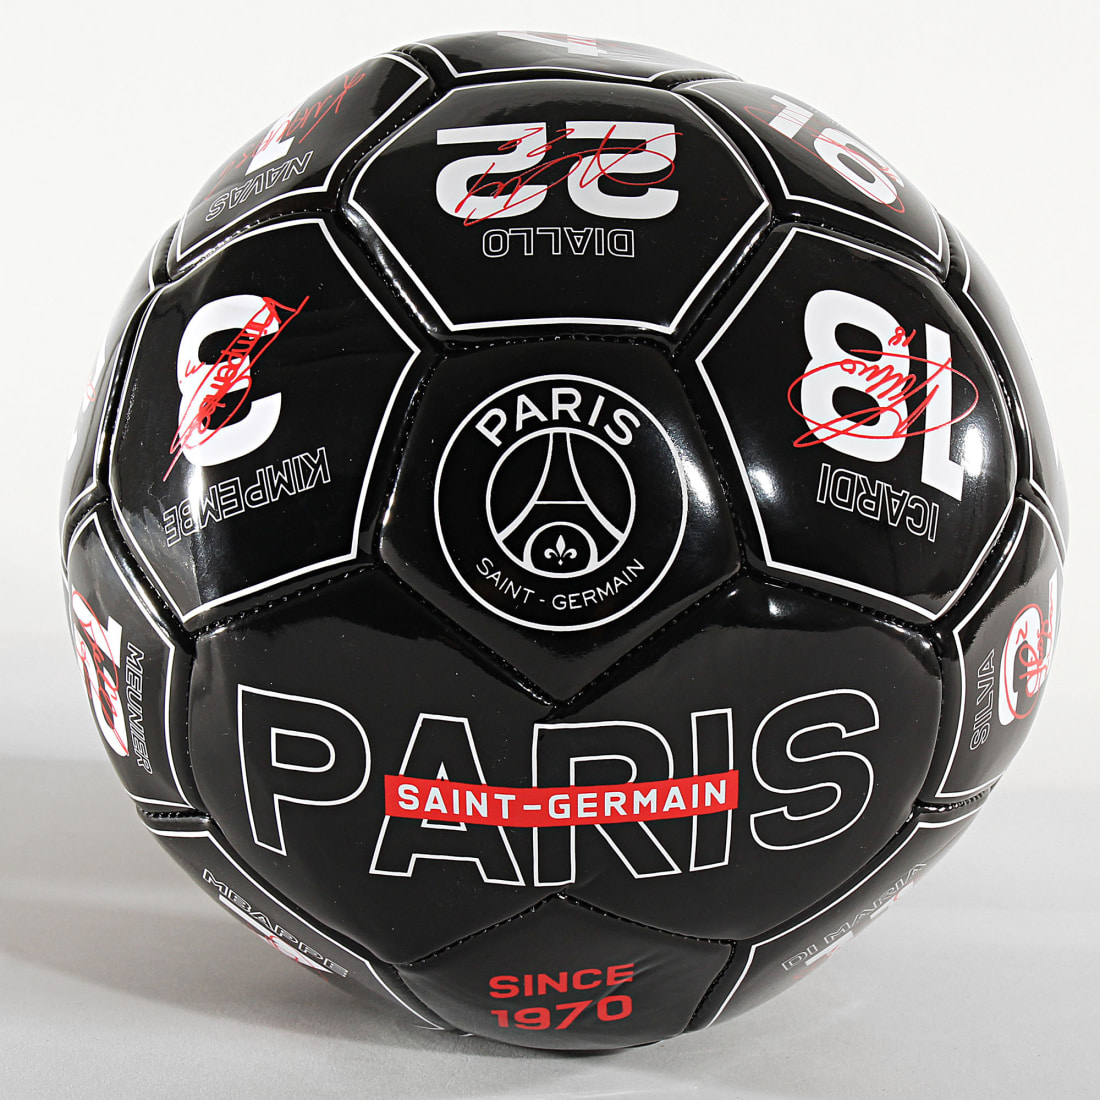 Ballon Signatures PSG - Collection officielle PARIS SAINT GERMAIN - taille  5 PSG